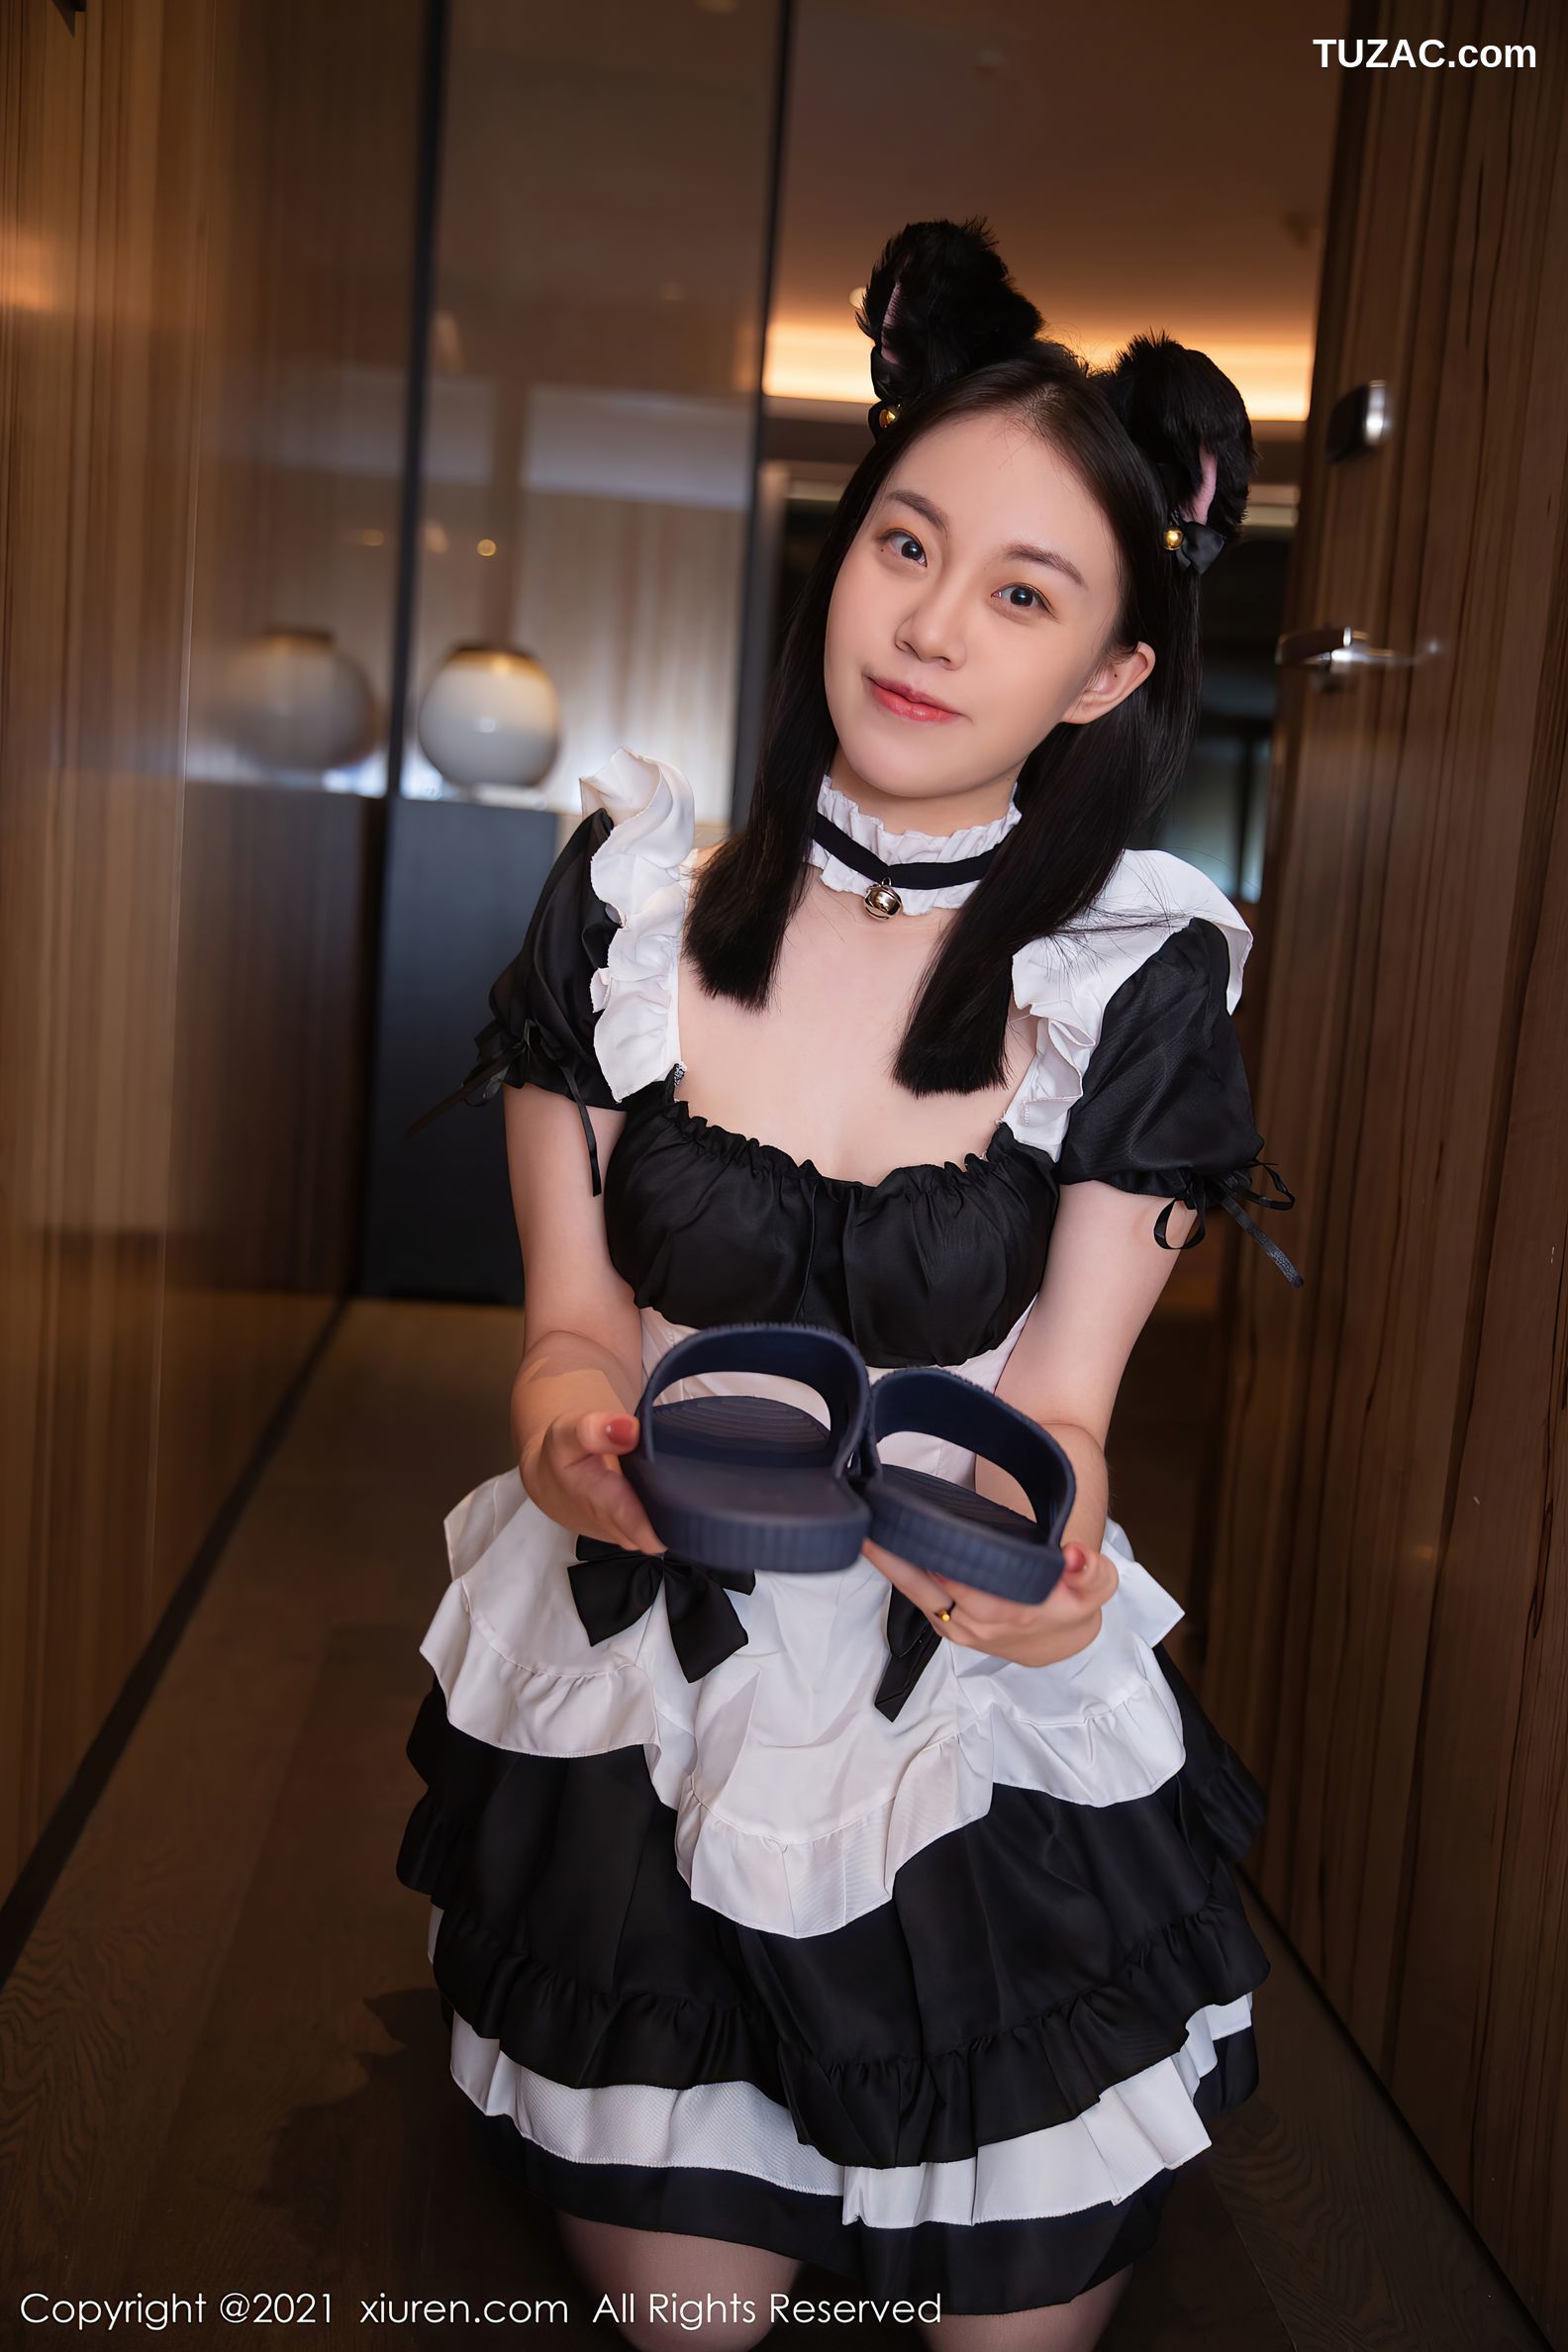 XiuRen秀人网-4153-一颗甜蛋黄a-深夜女仆服务主题低胸装蕾丝吊带袜-2021.11.02